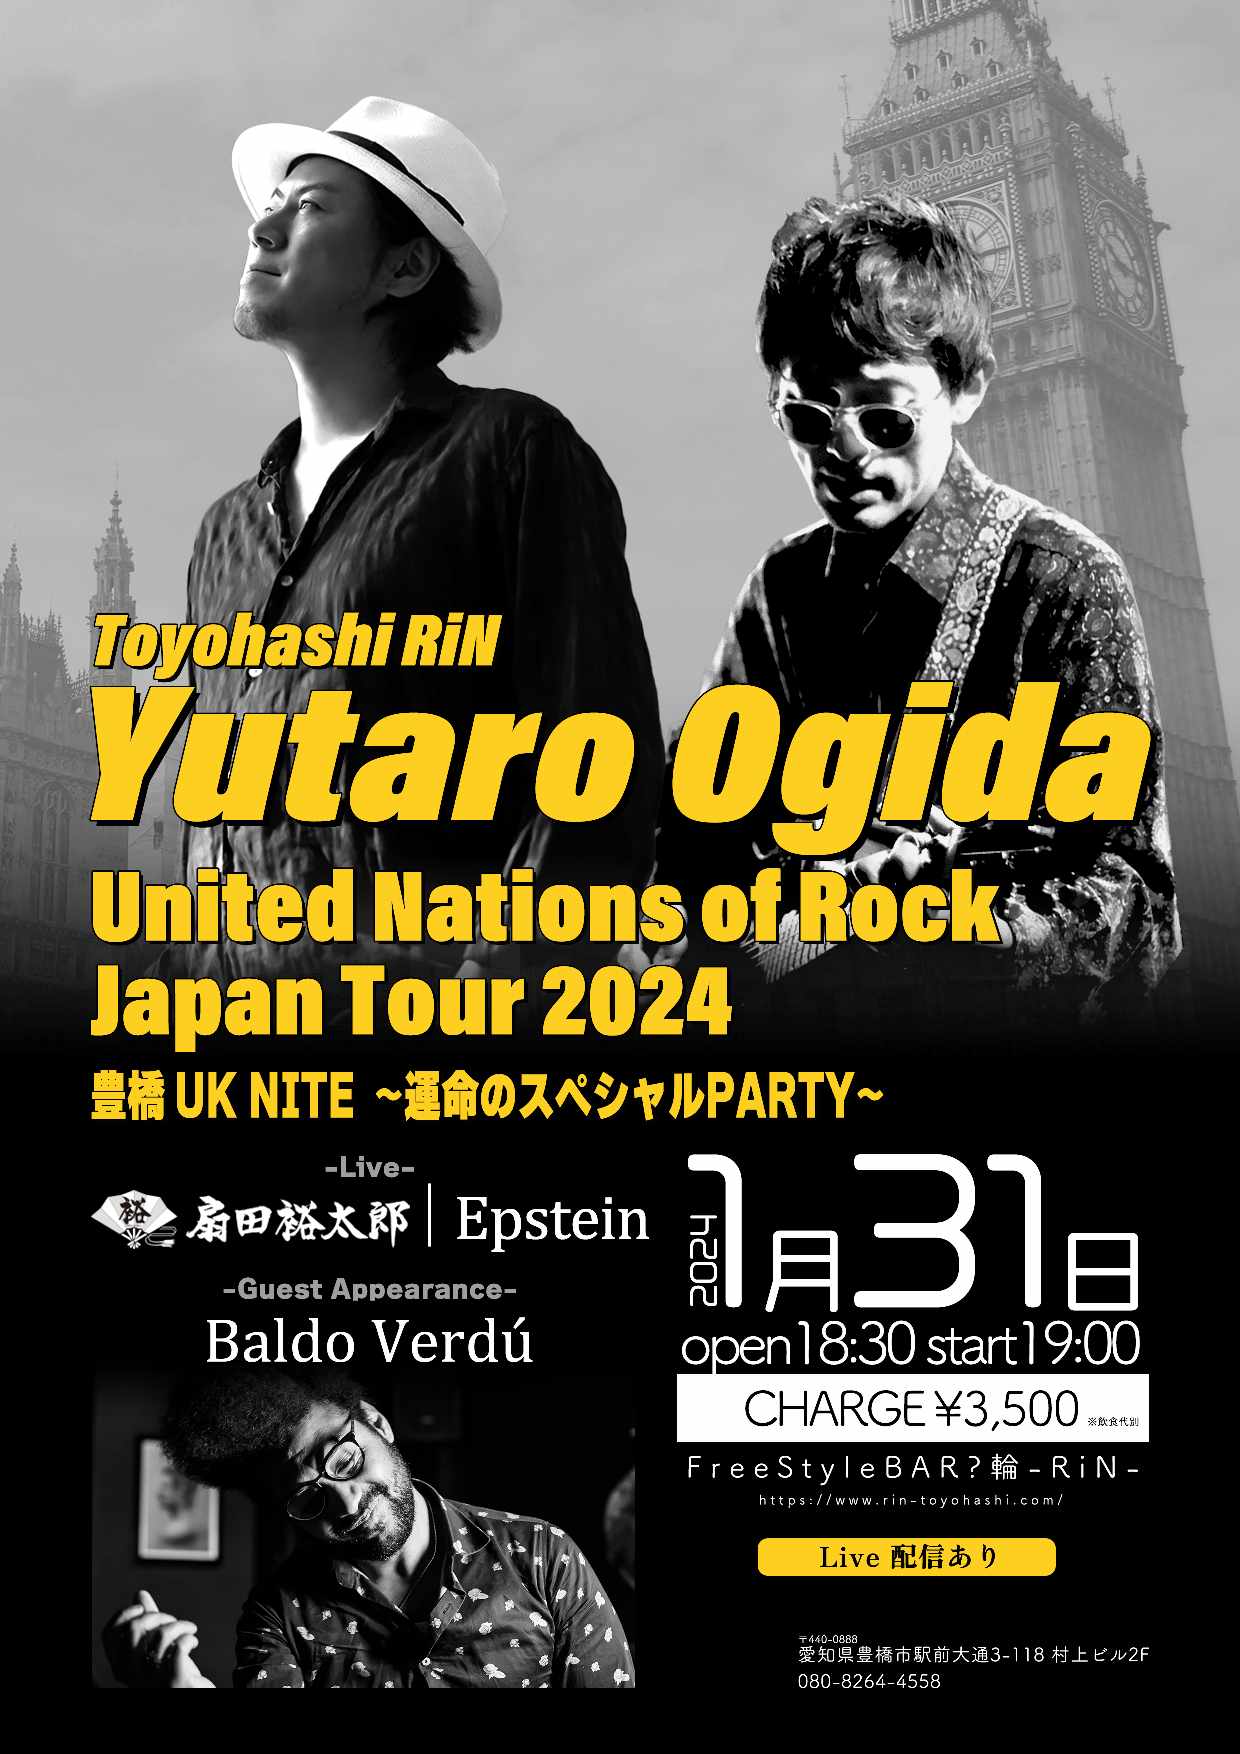 Yutaro Ogida United Nations of Rock Japan Tour 2024